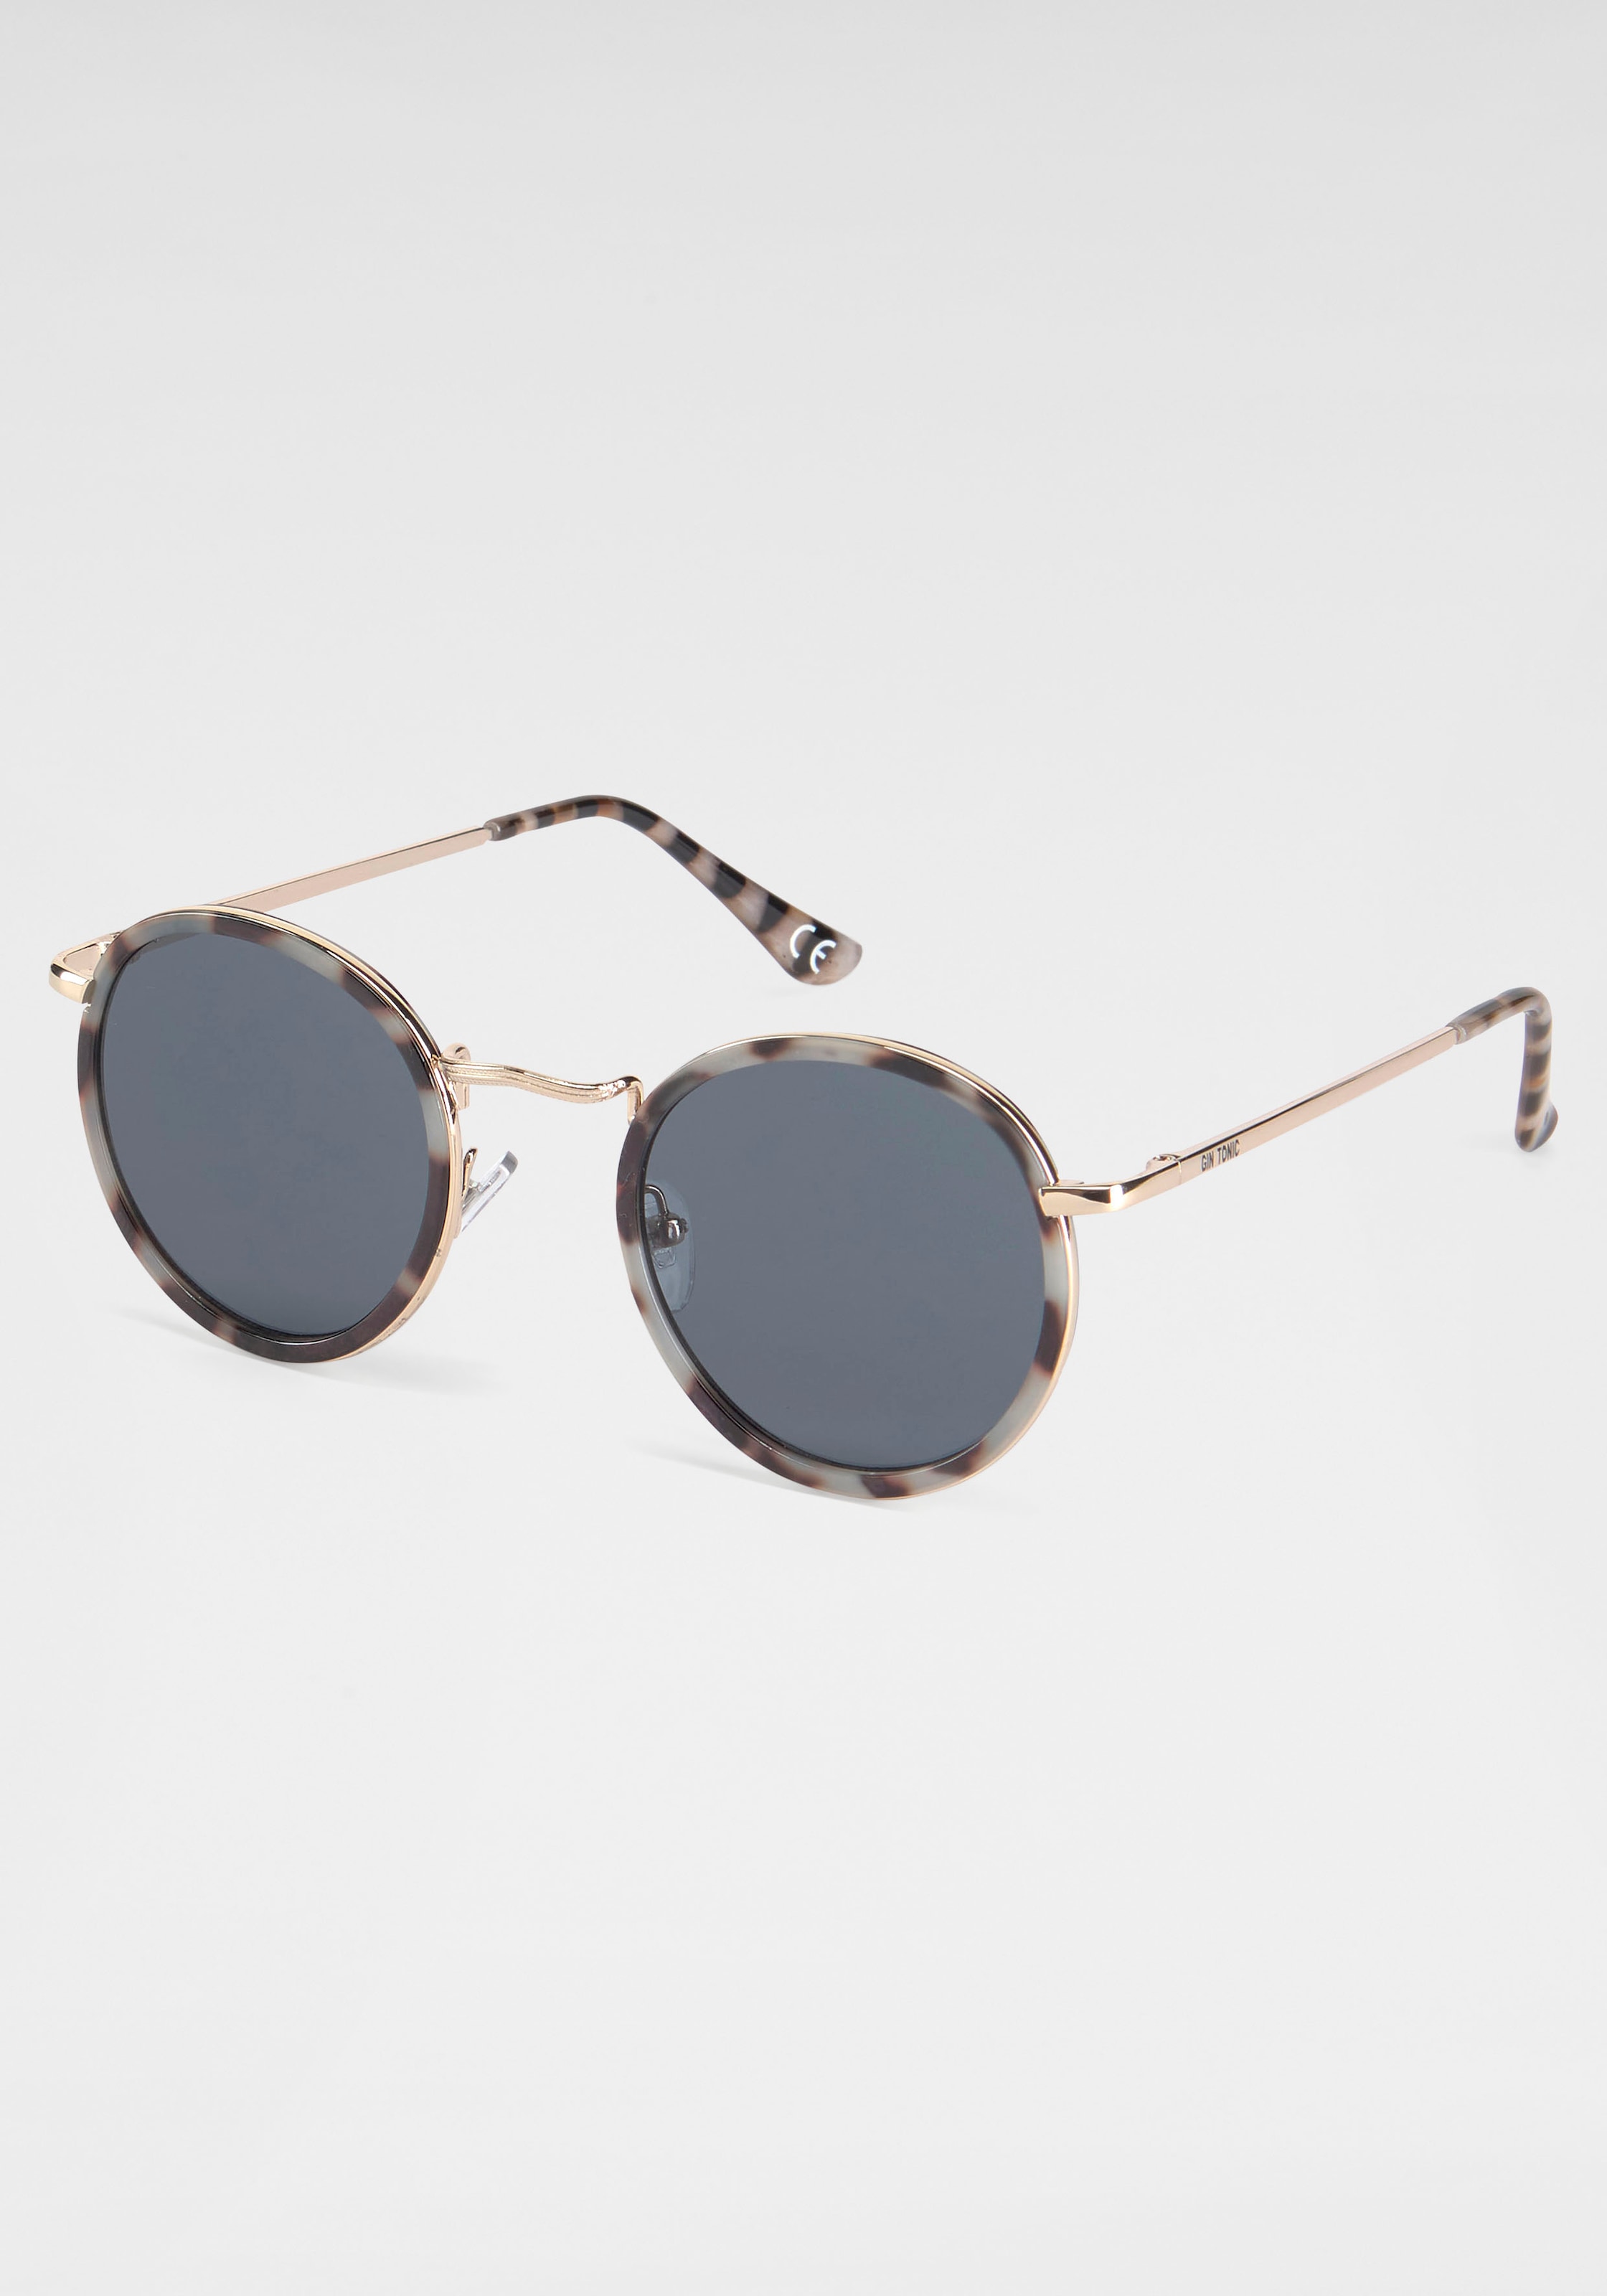 ♕ PRIMETTA Eyewear Sonnenbrille versandkostenfrei kaufen